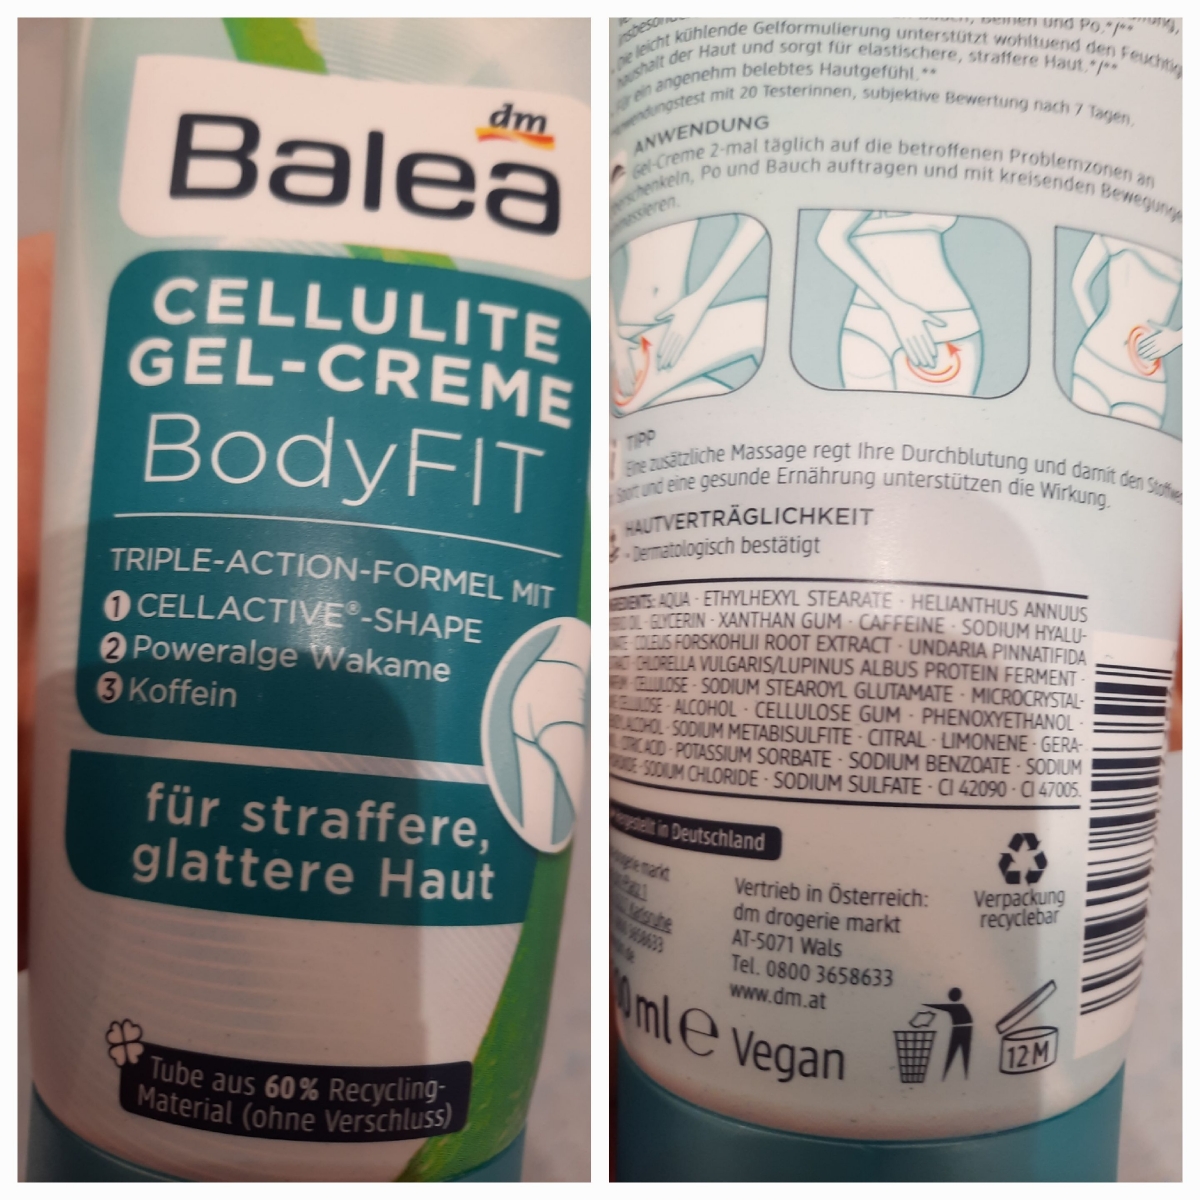 Dm balea Cellulite Gel-Creme BodyFit Reviews | abillion